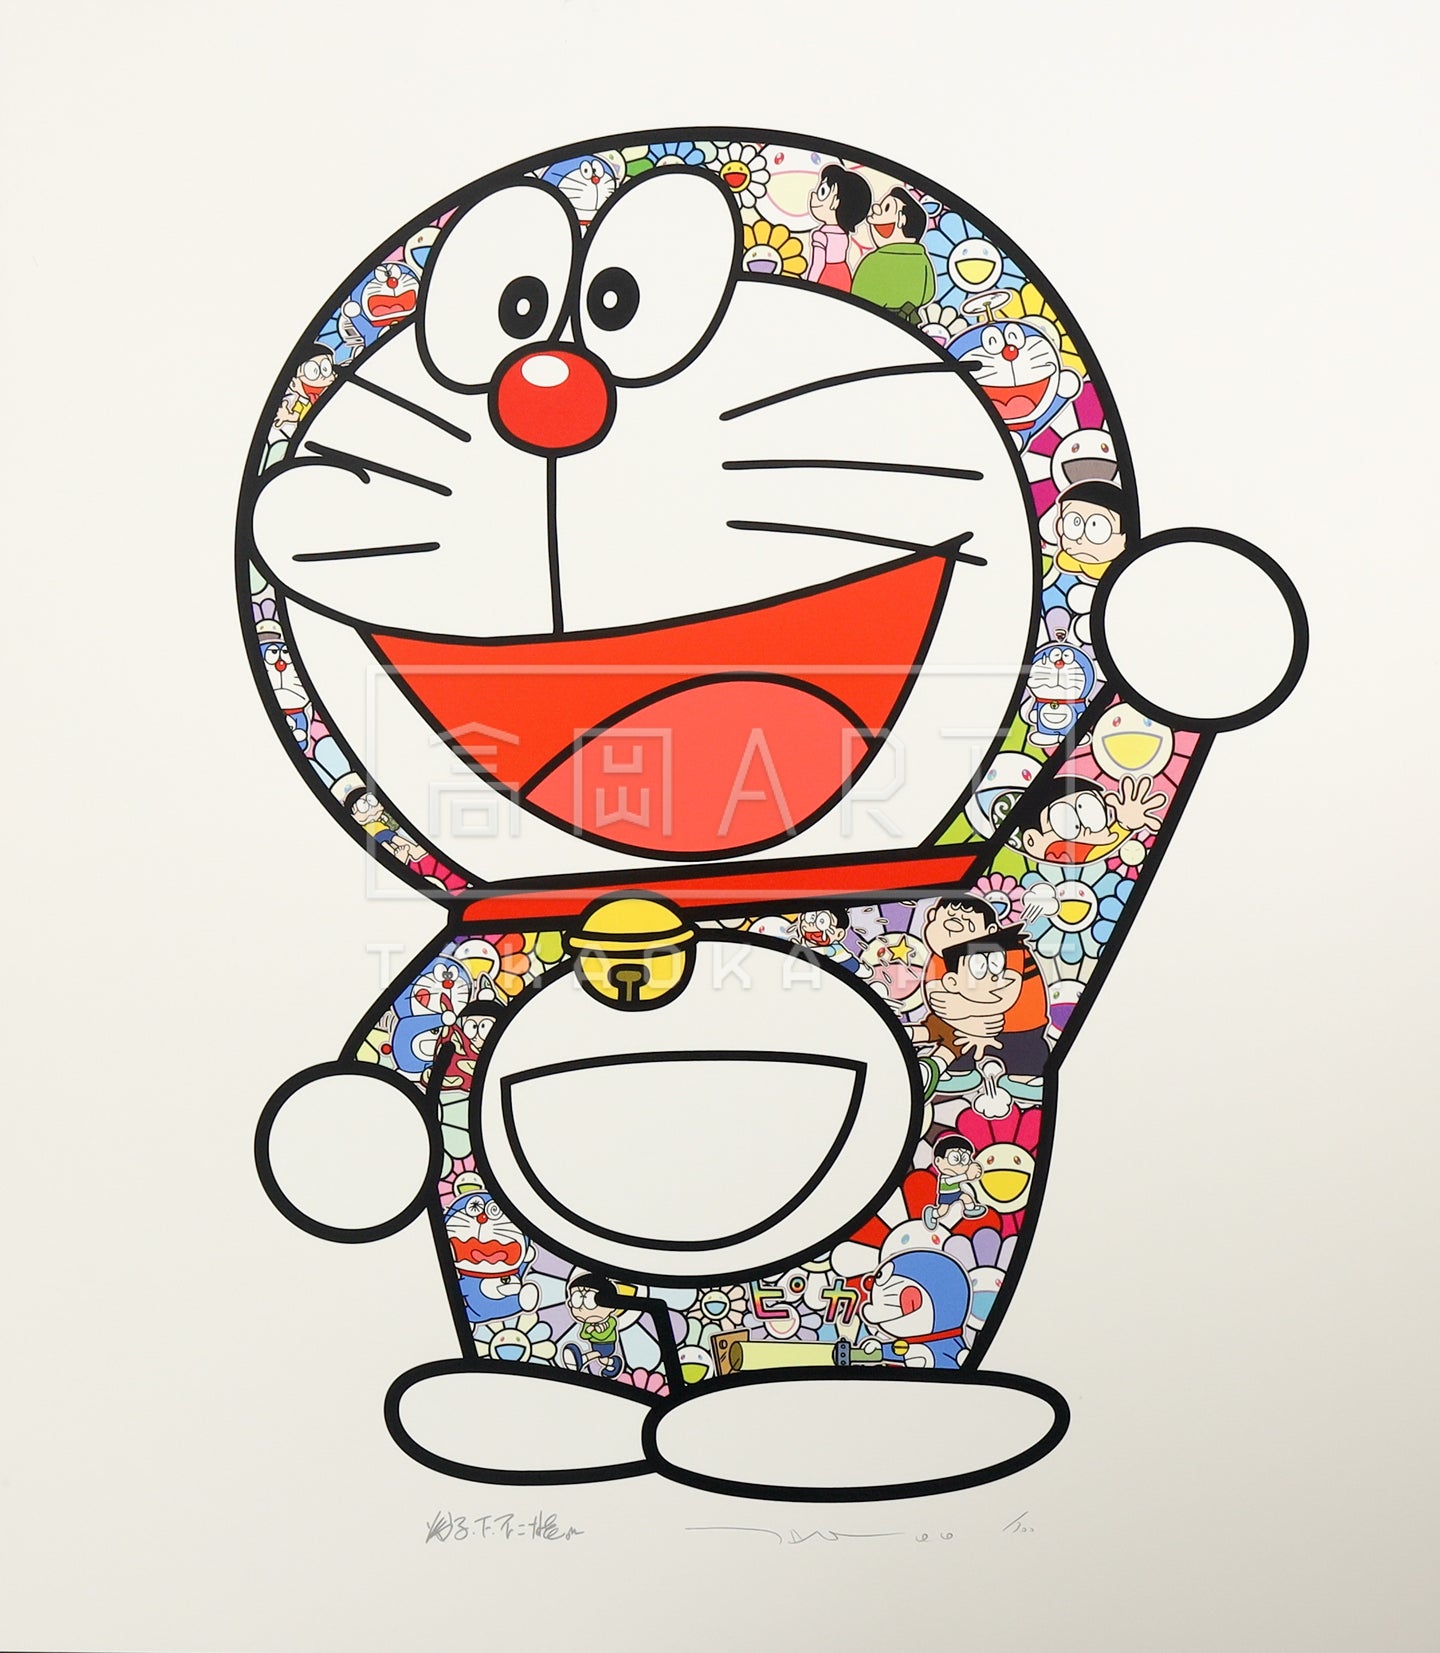 Doraemon: Thank you